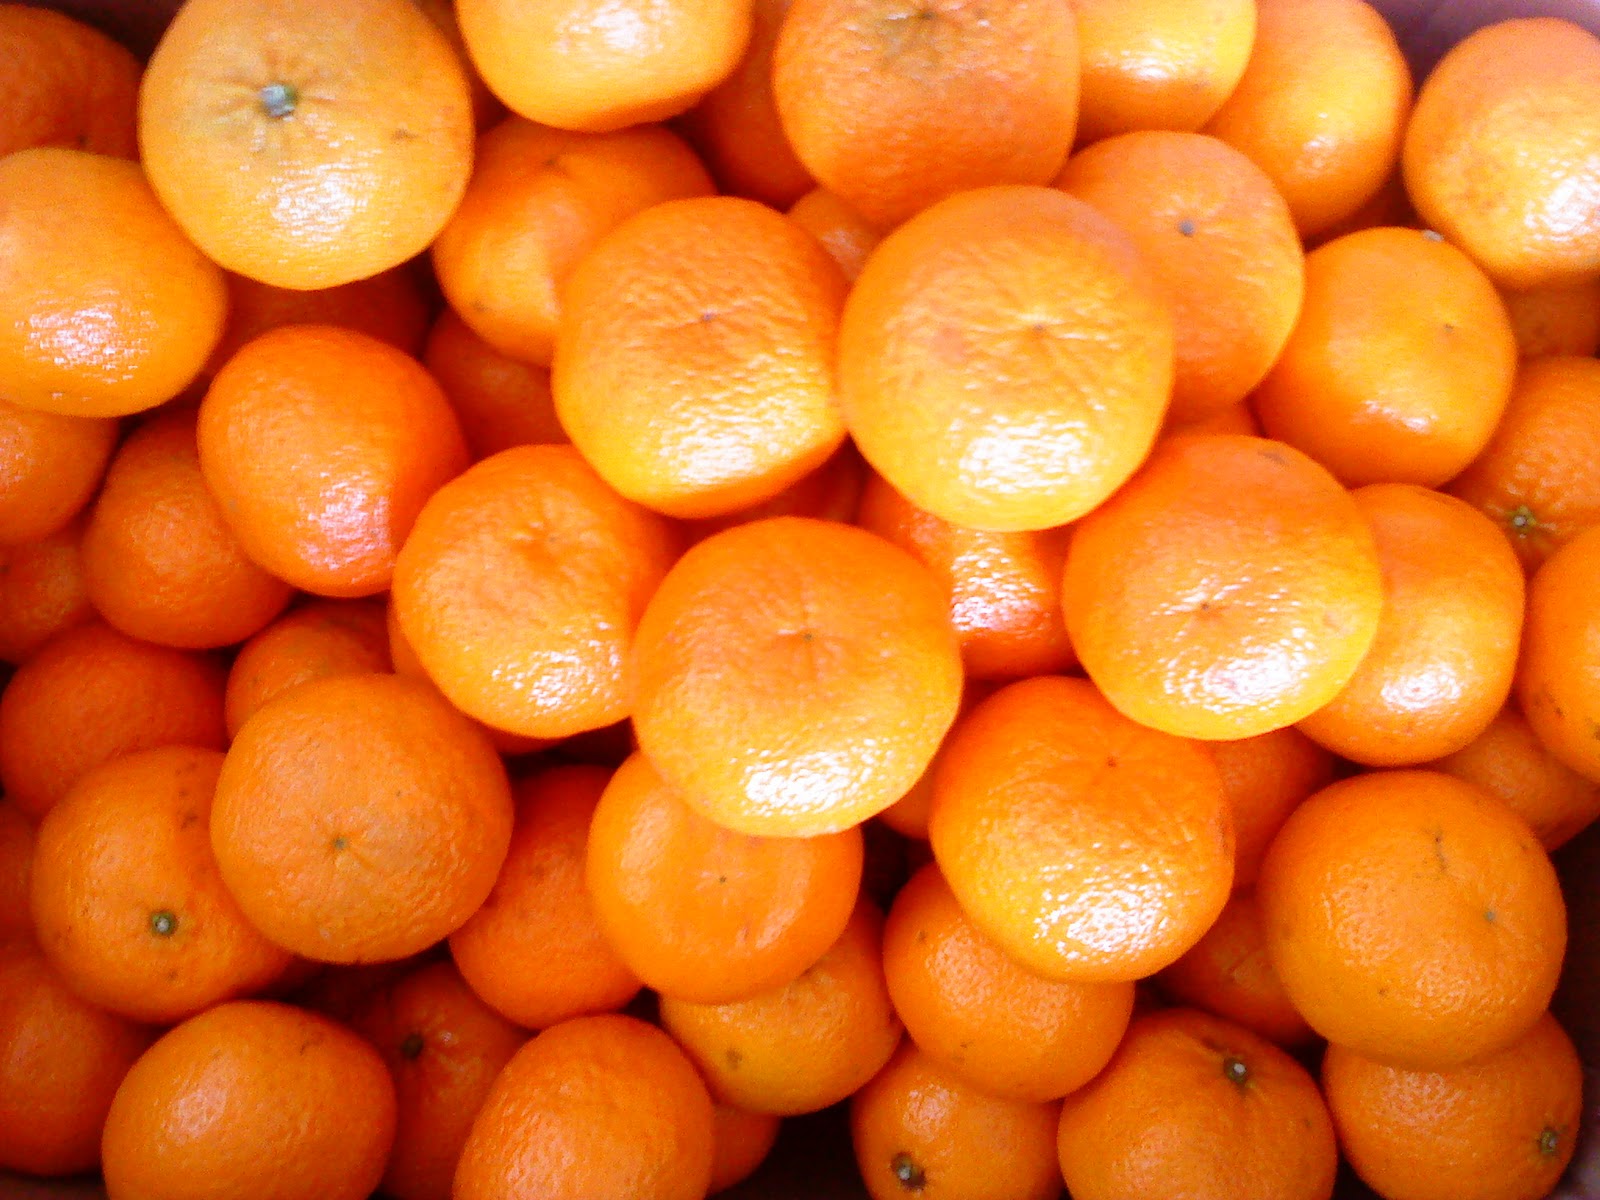 She likes oranges. Китайский апельсин. Китайские апельсинки. Китайский мандарин фрукт. Апельсины дички.